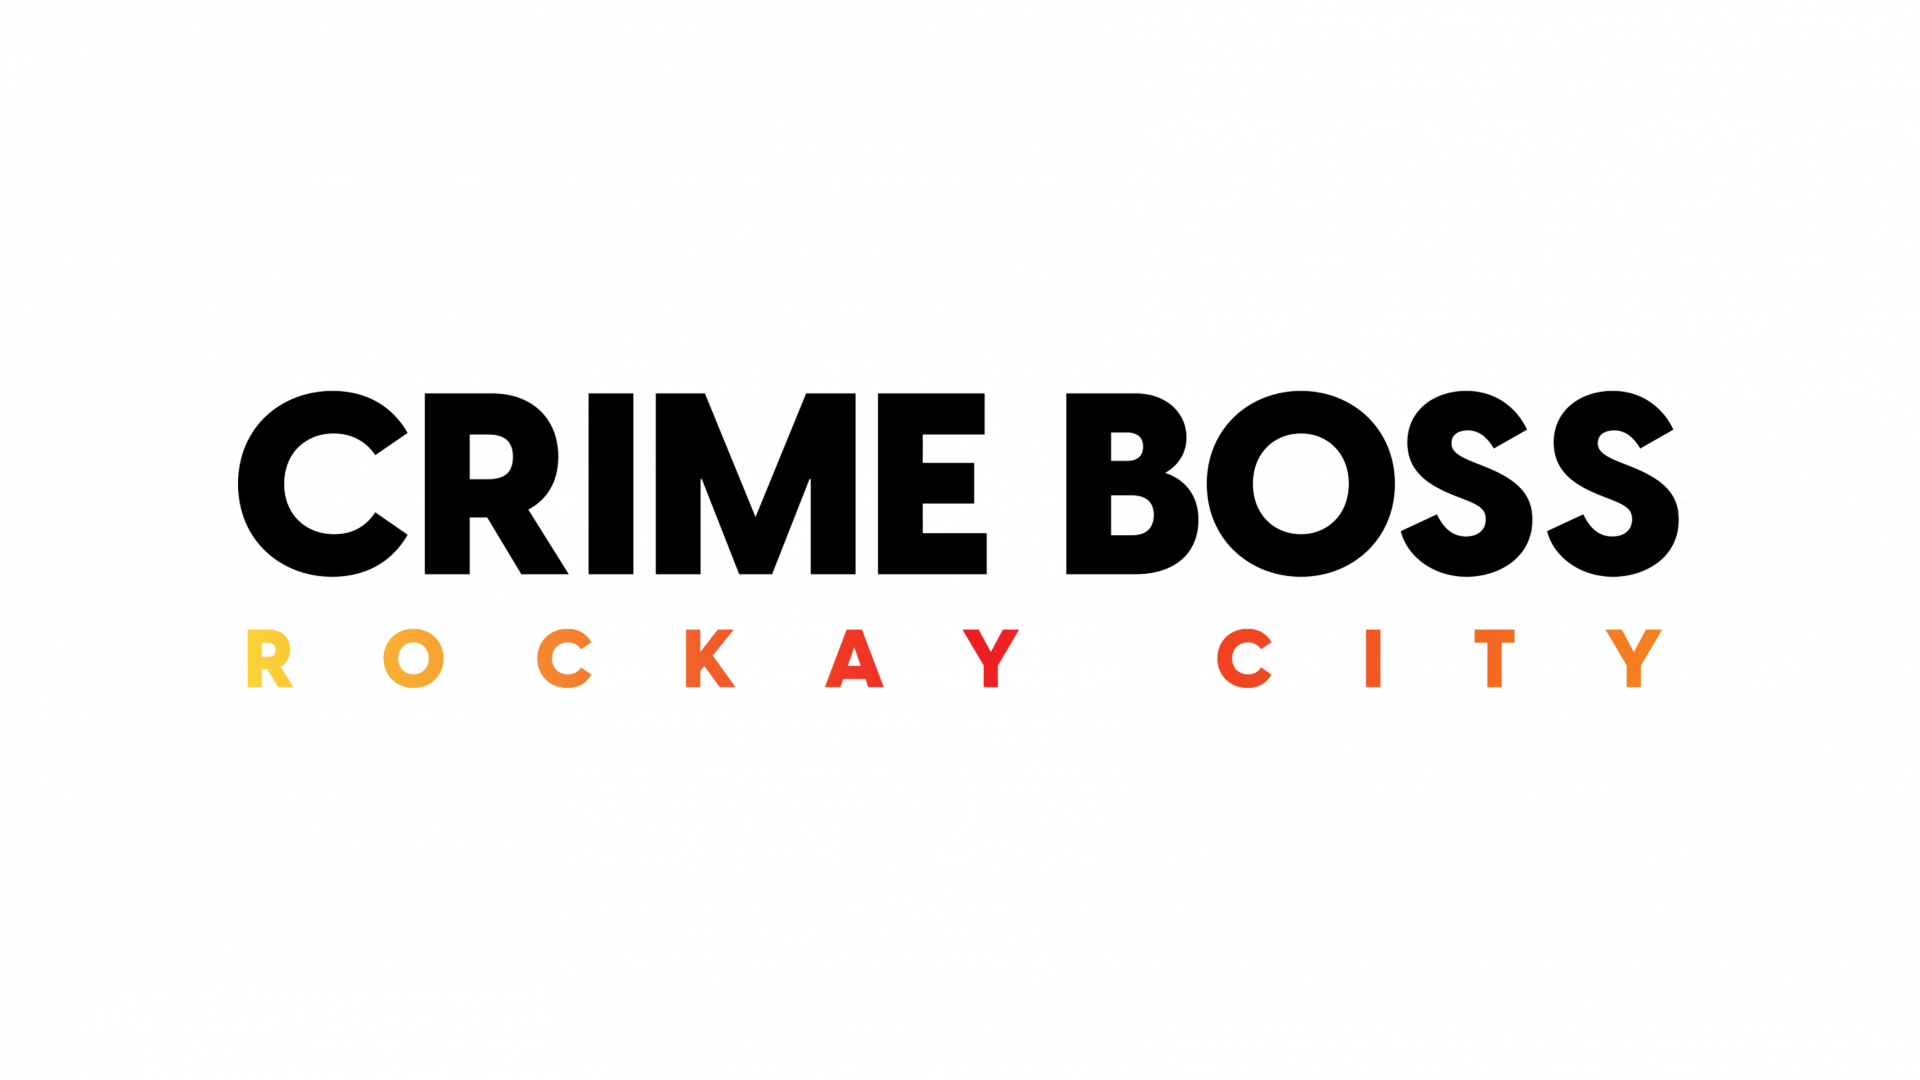 Double date de sortie pour Crime Boss | News  - PSthc.fr